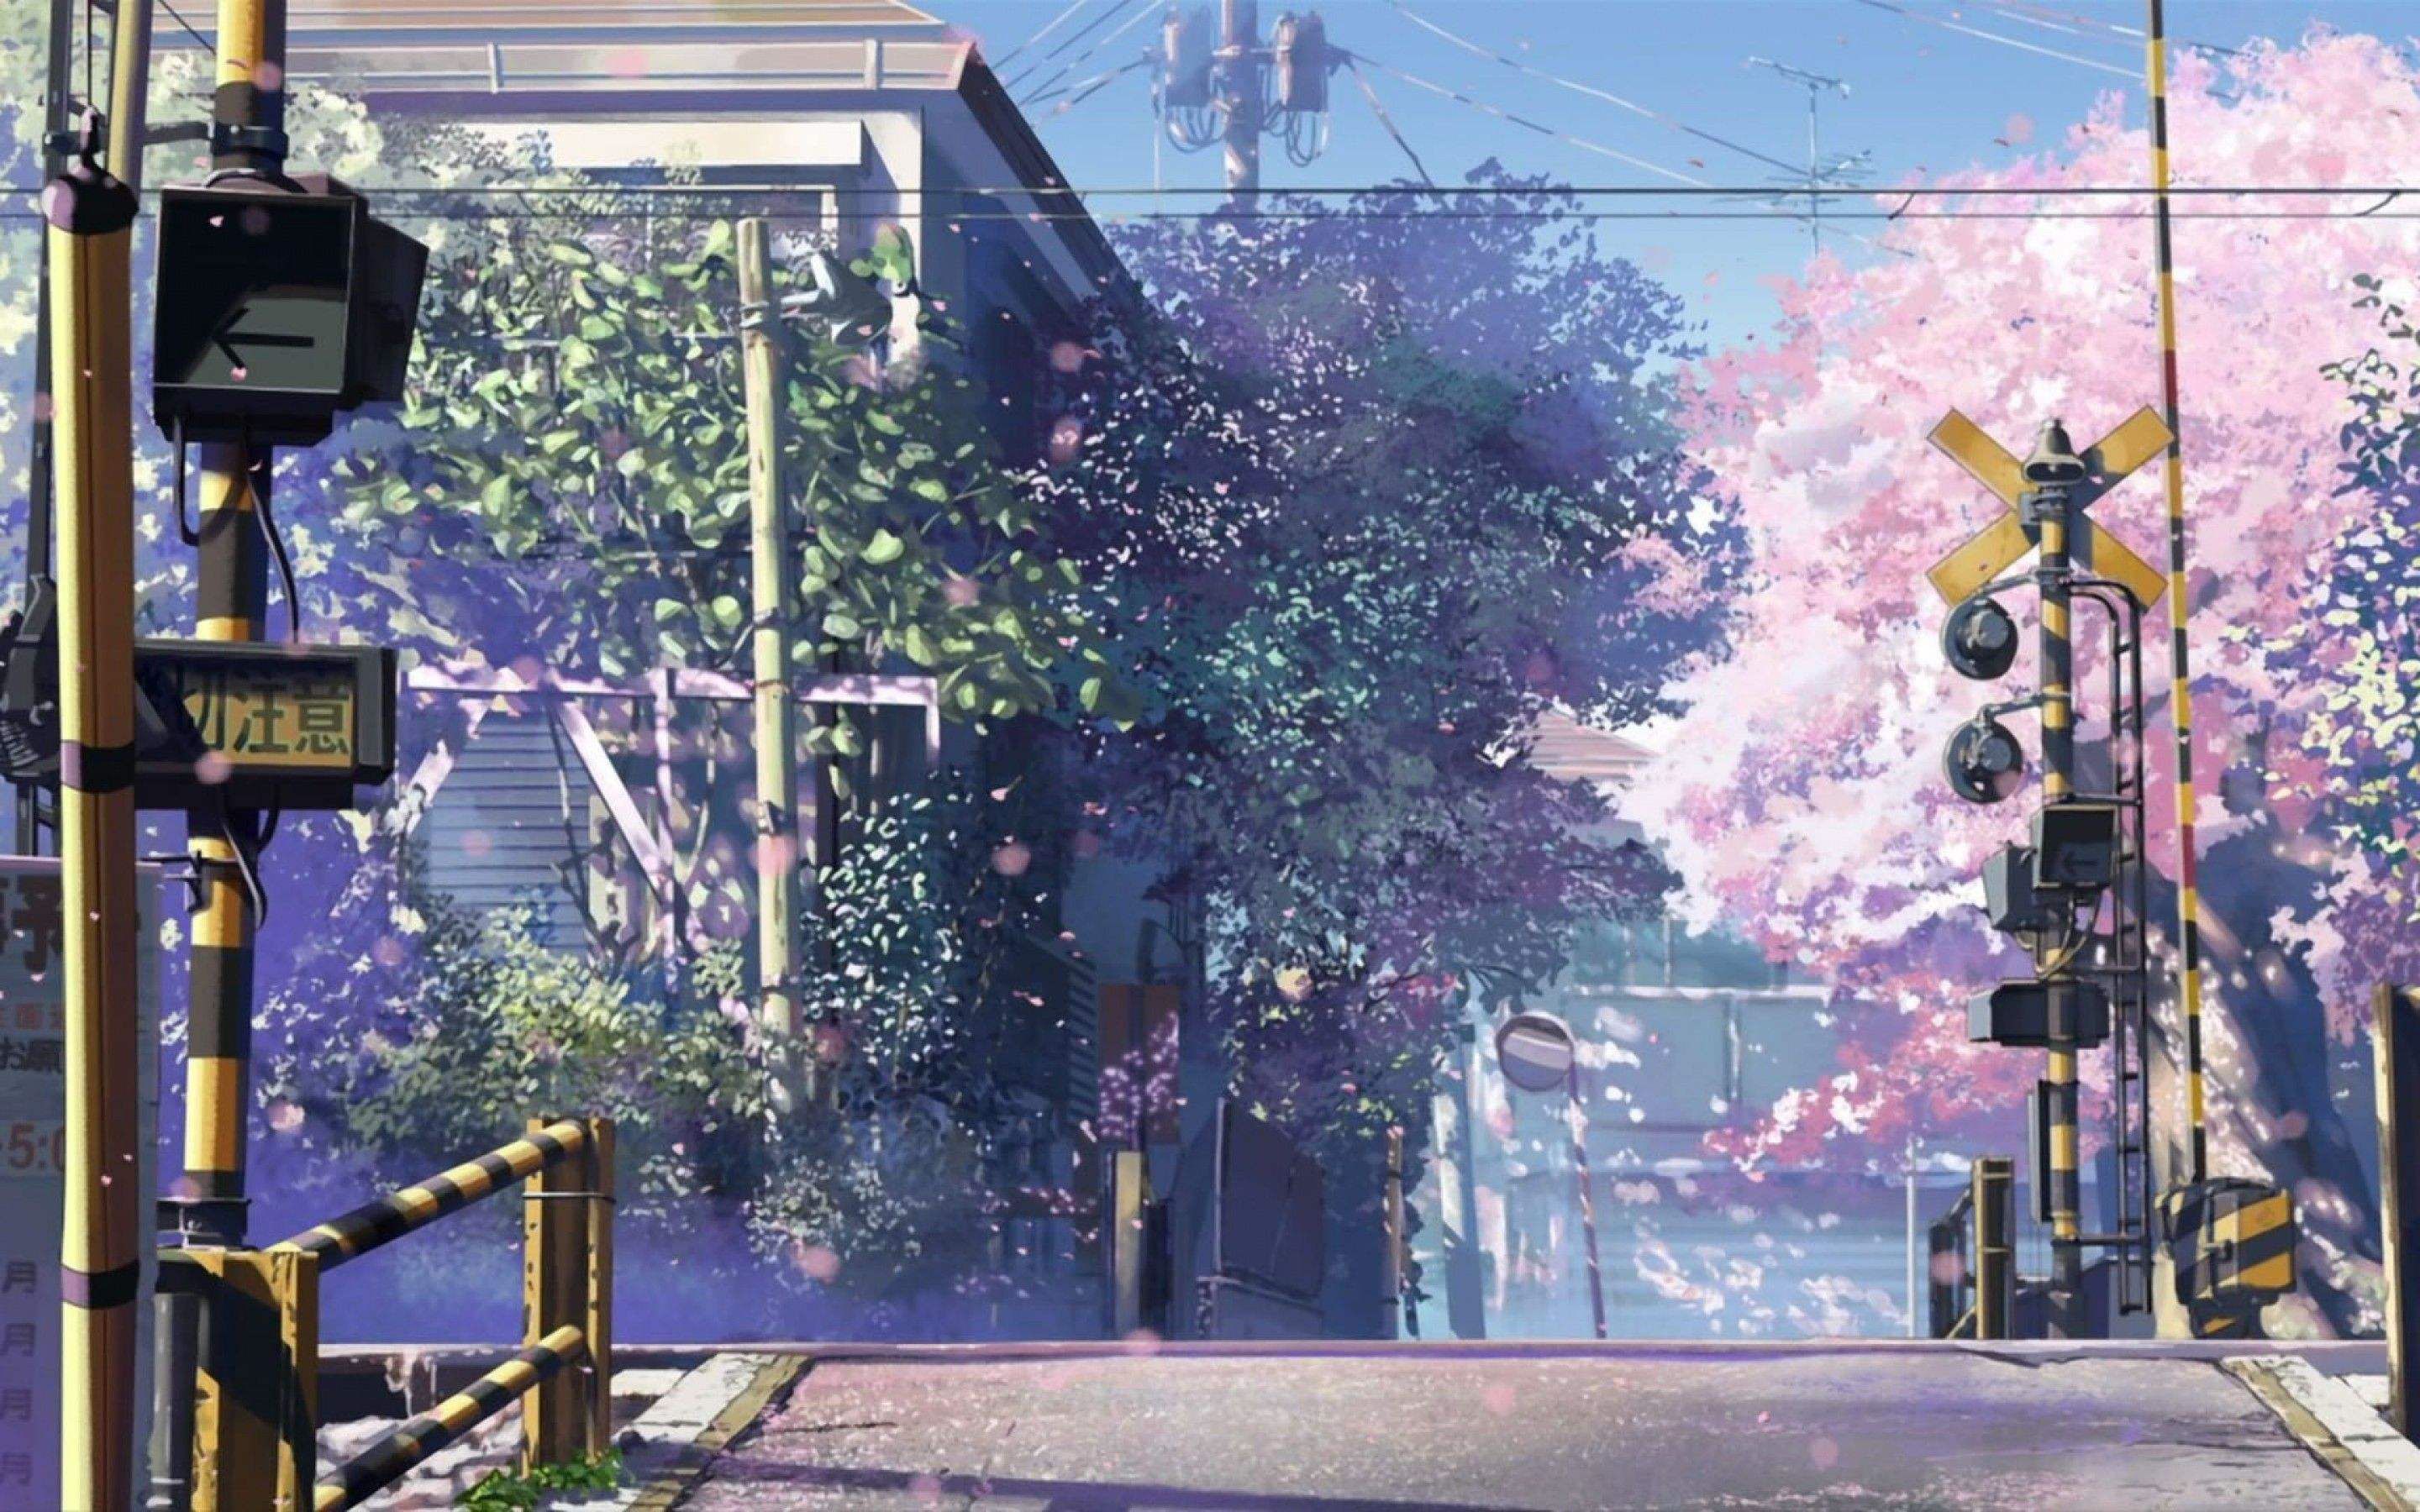 Tổng hợp 60+ về hình nền đường phố anime - Du học Akina